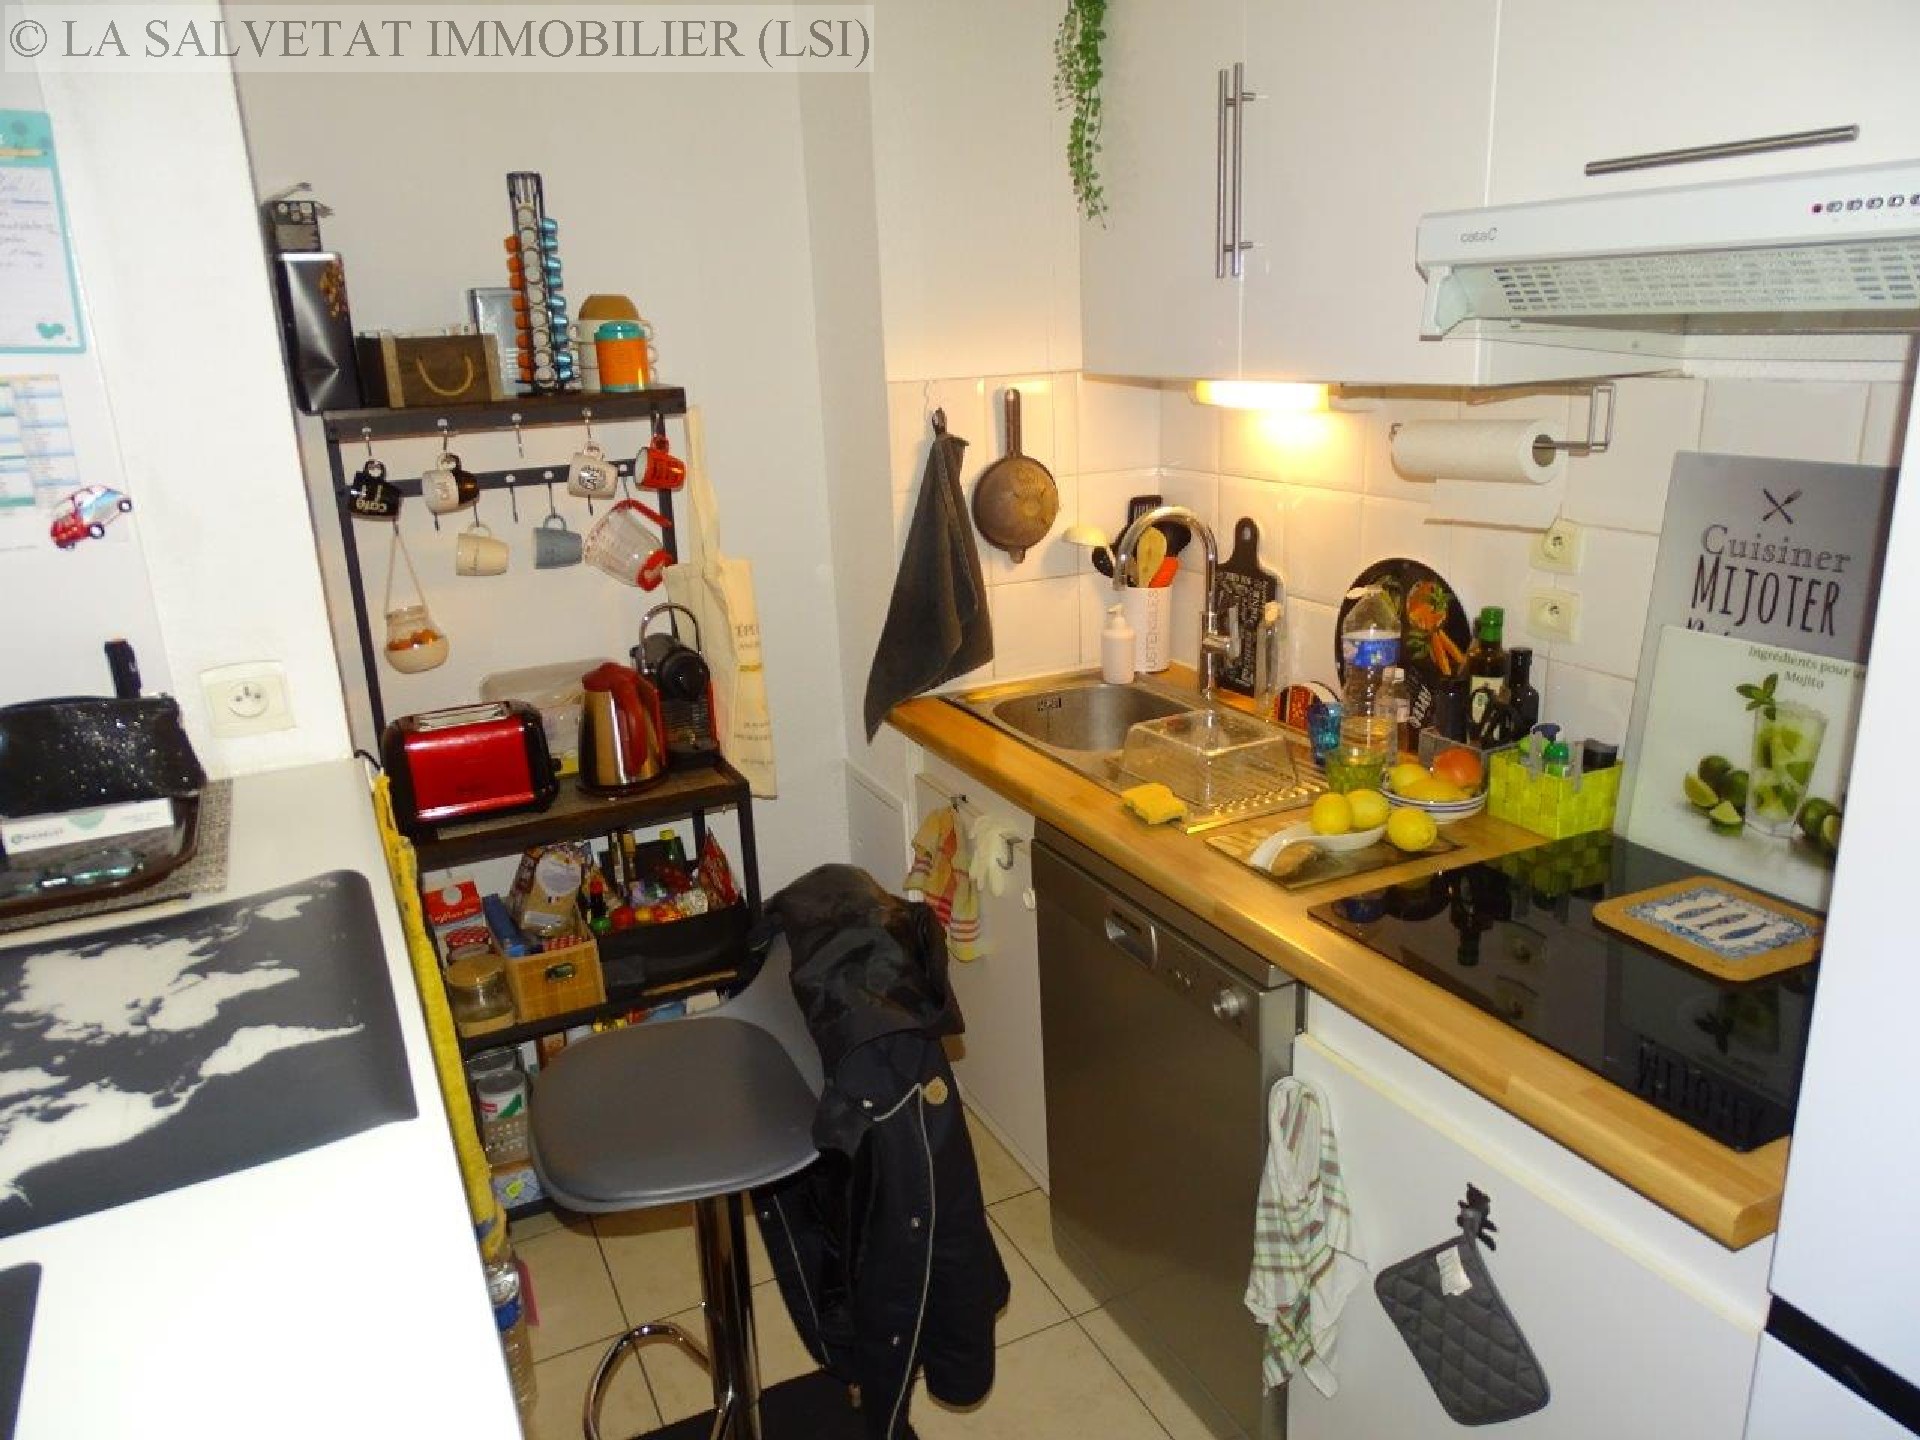 Vente appartement - ST LYS<br>49 m², 2 pièces